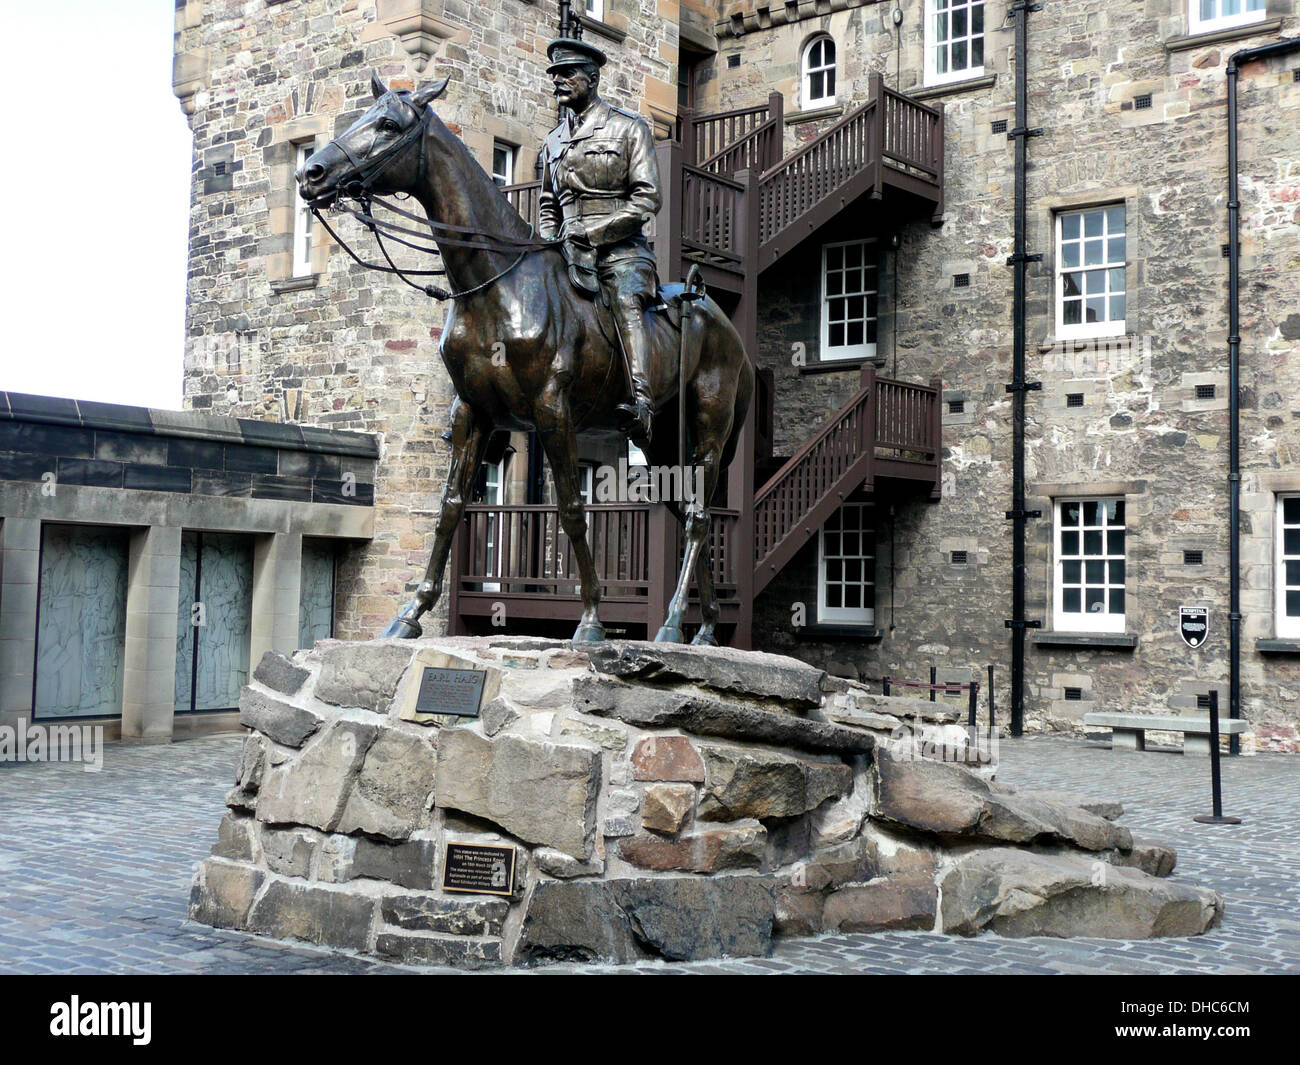 La statue de Earl Haig,le château d'Édimbourg, du Royal Mile d'Édimbourg, Écosse,,Grande-bretagne, Royaume-Uni Banque D'Images